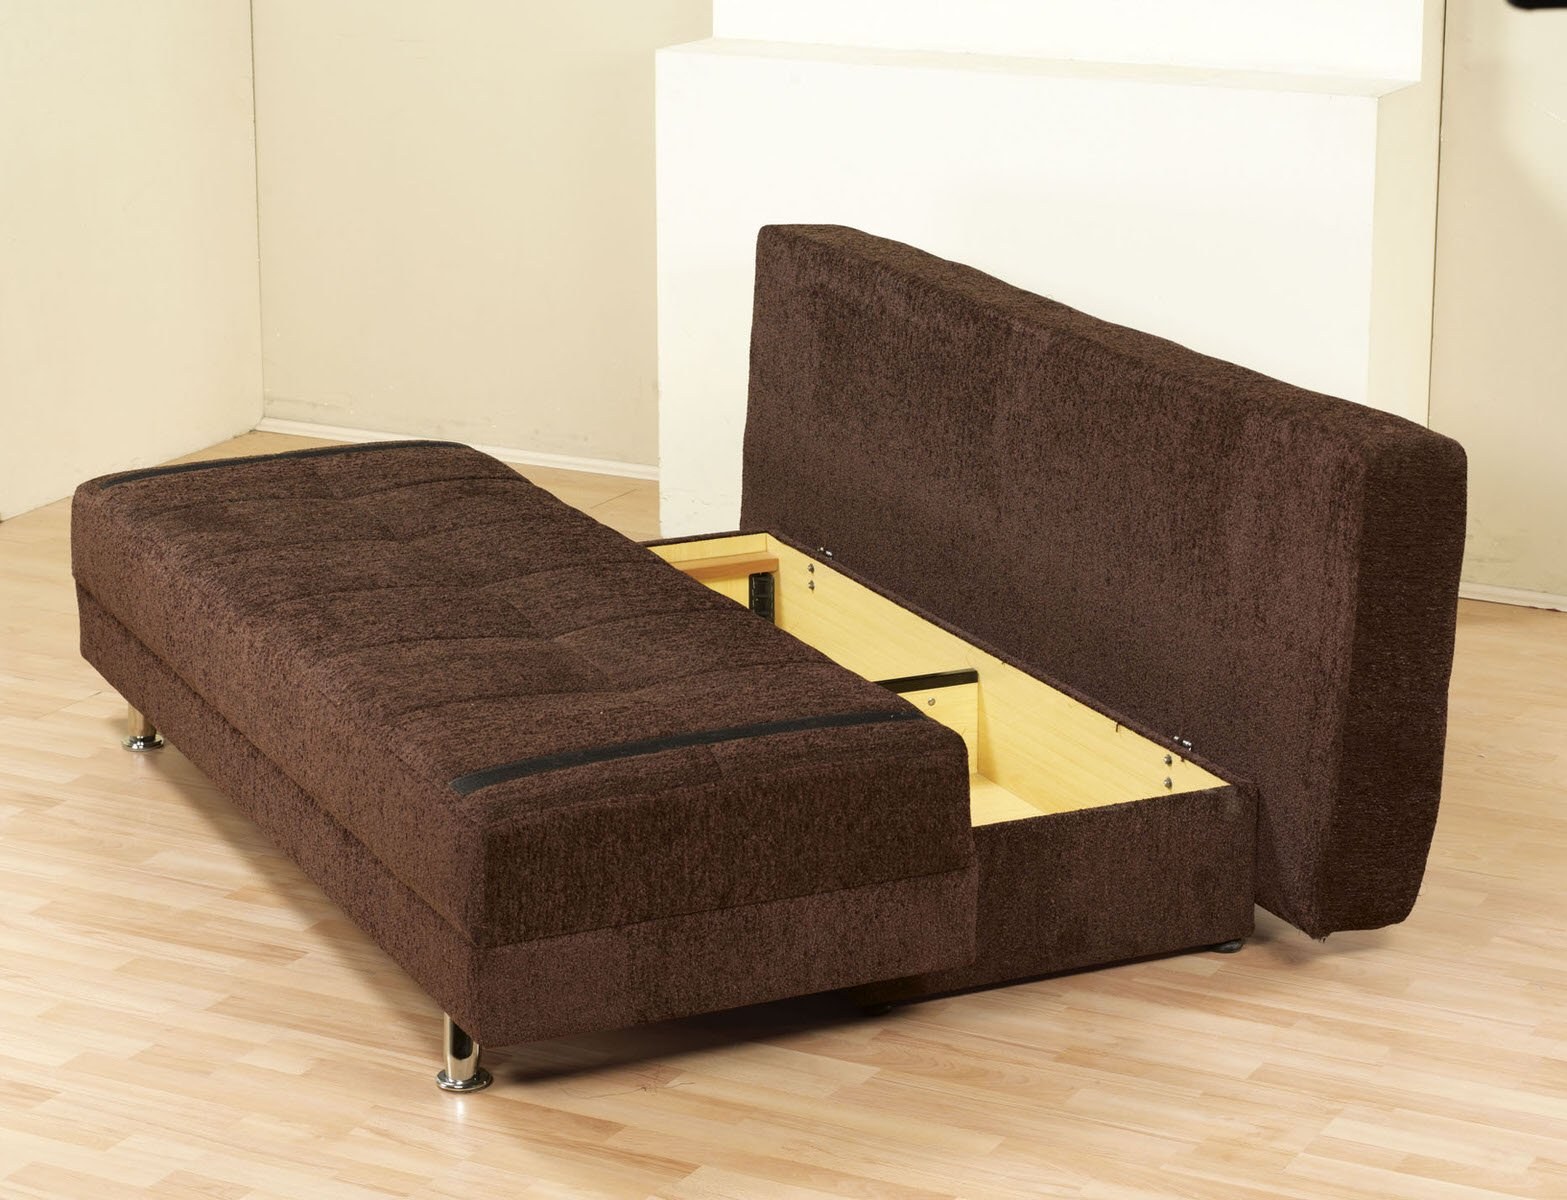 Сборка софы. Диван Sofa + Bed + Storage. Диван-кровать Парма механизм еврокнижка. Диван без спинки и подлокотников.